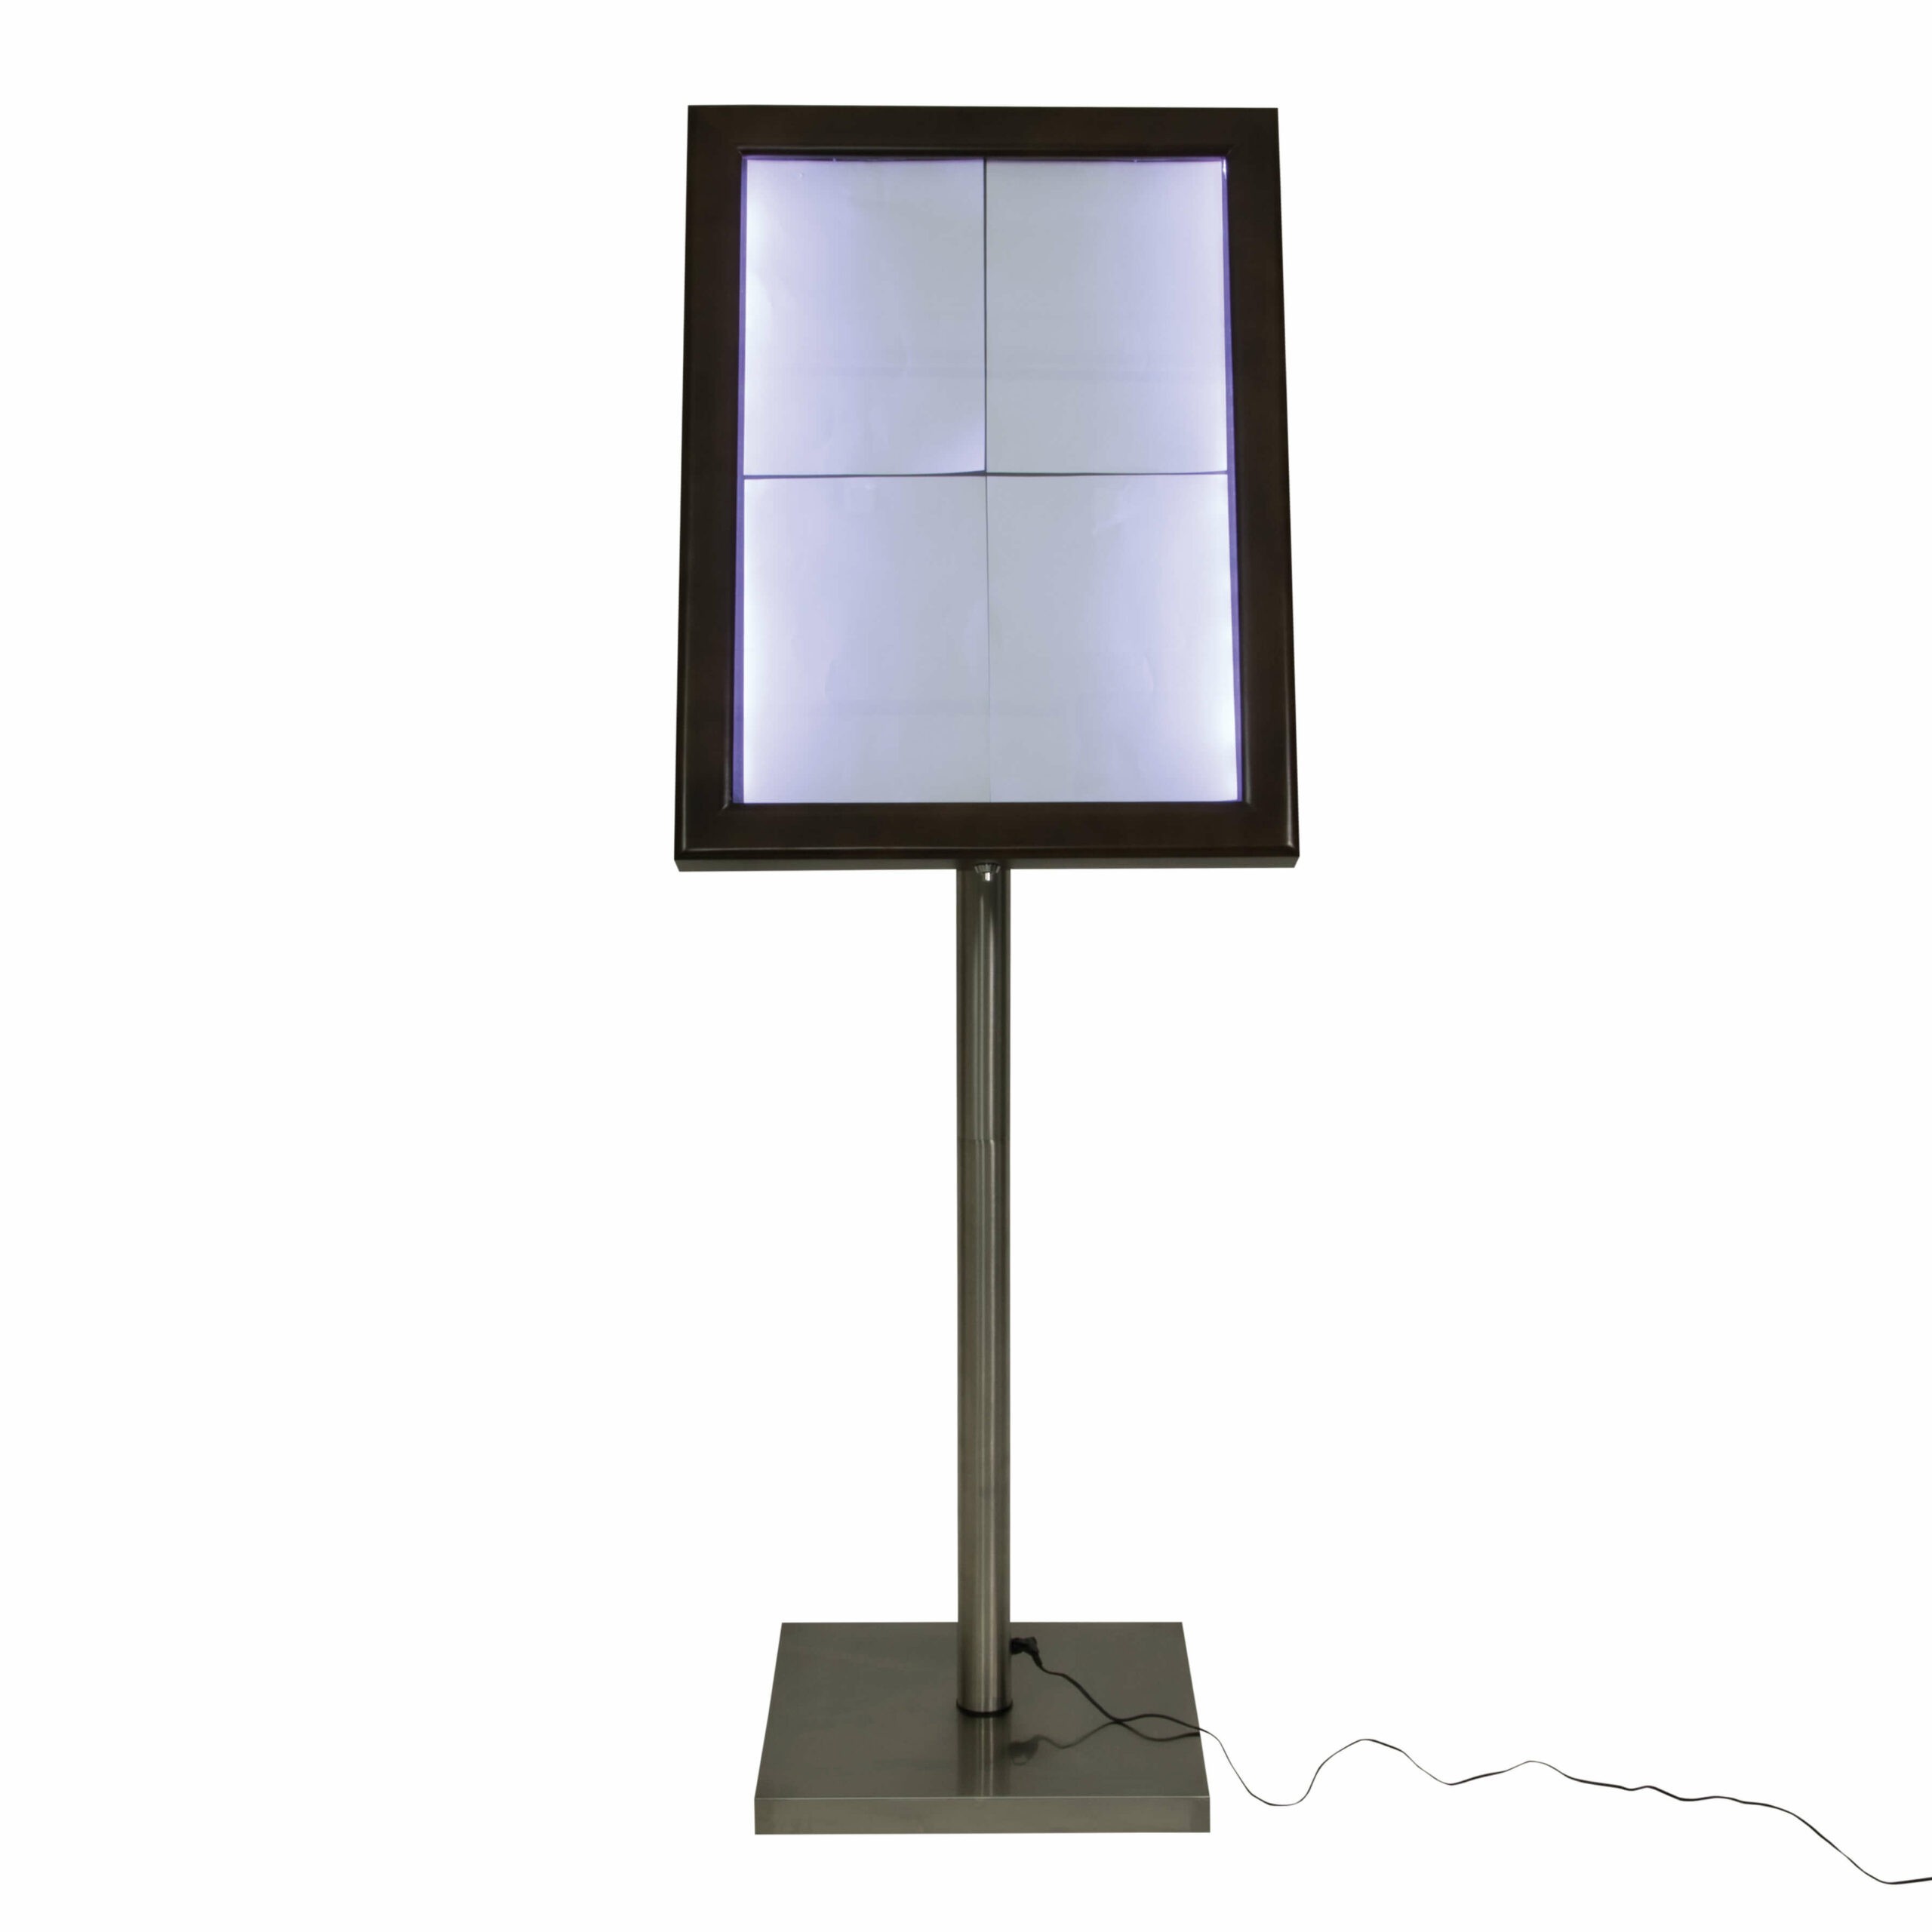 Tamsaus medžio faktūros 4xA4 formato meniu stovas su LED apšvietimu MCS-4A4-WLDB